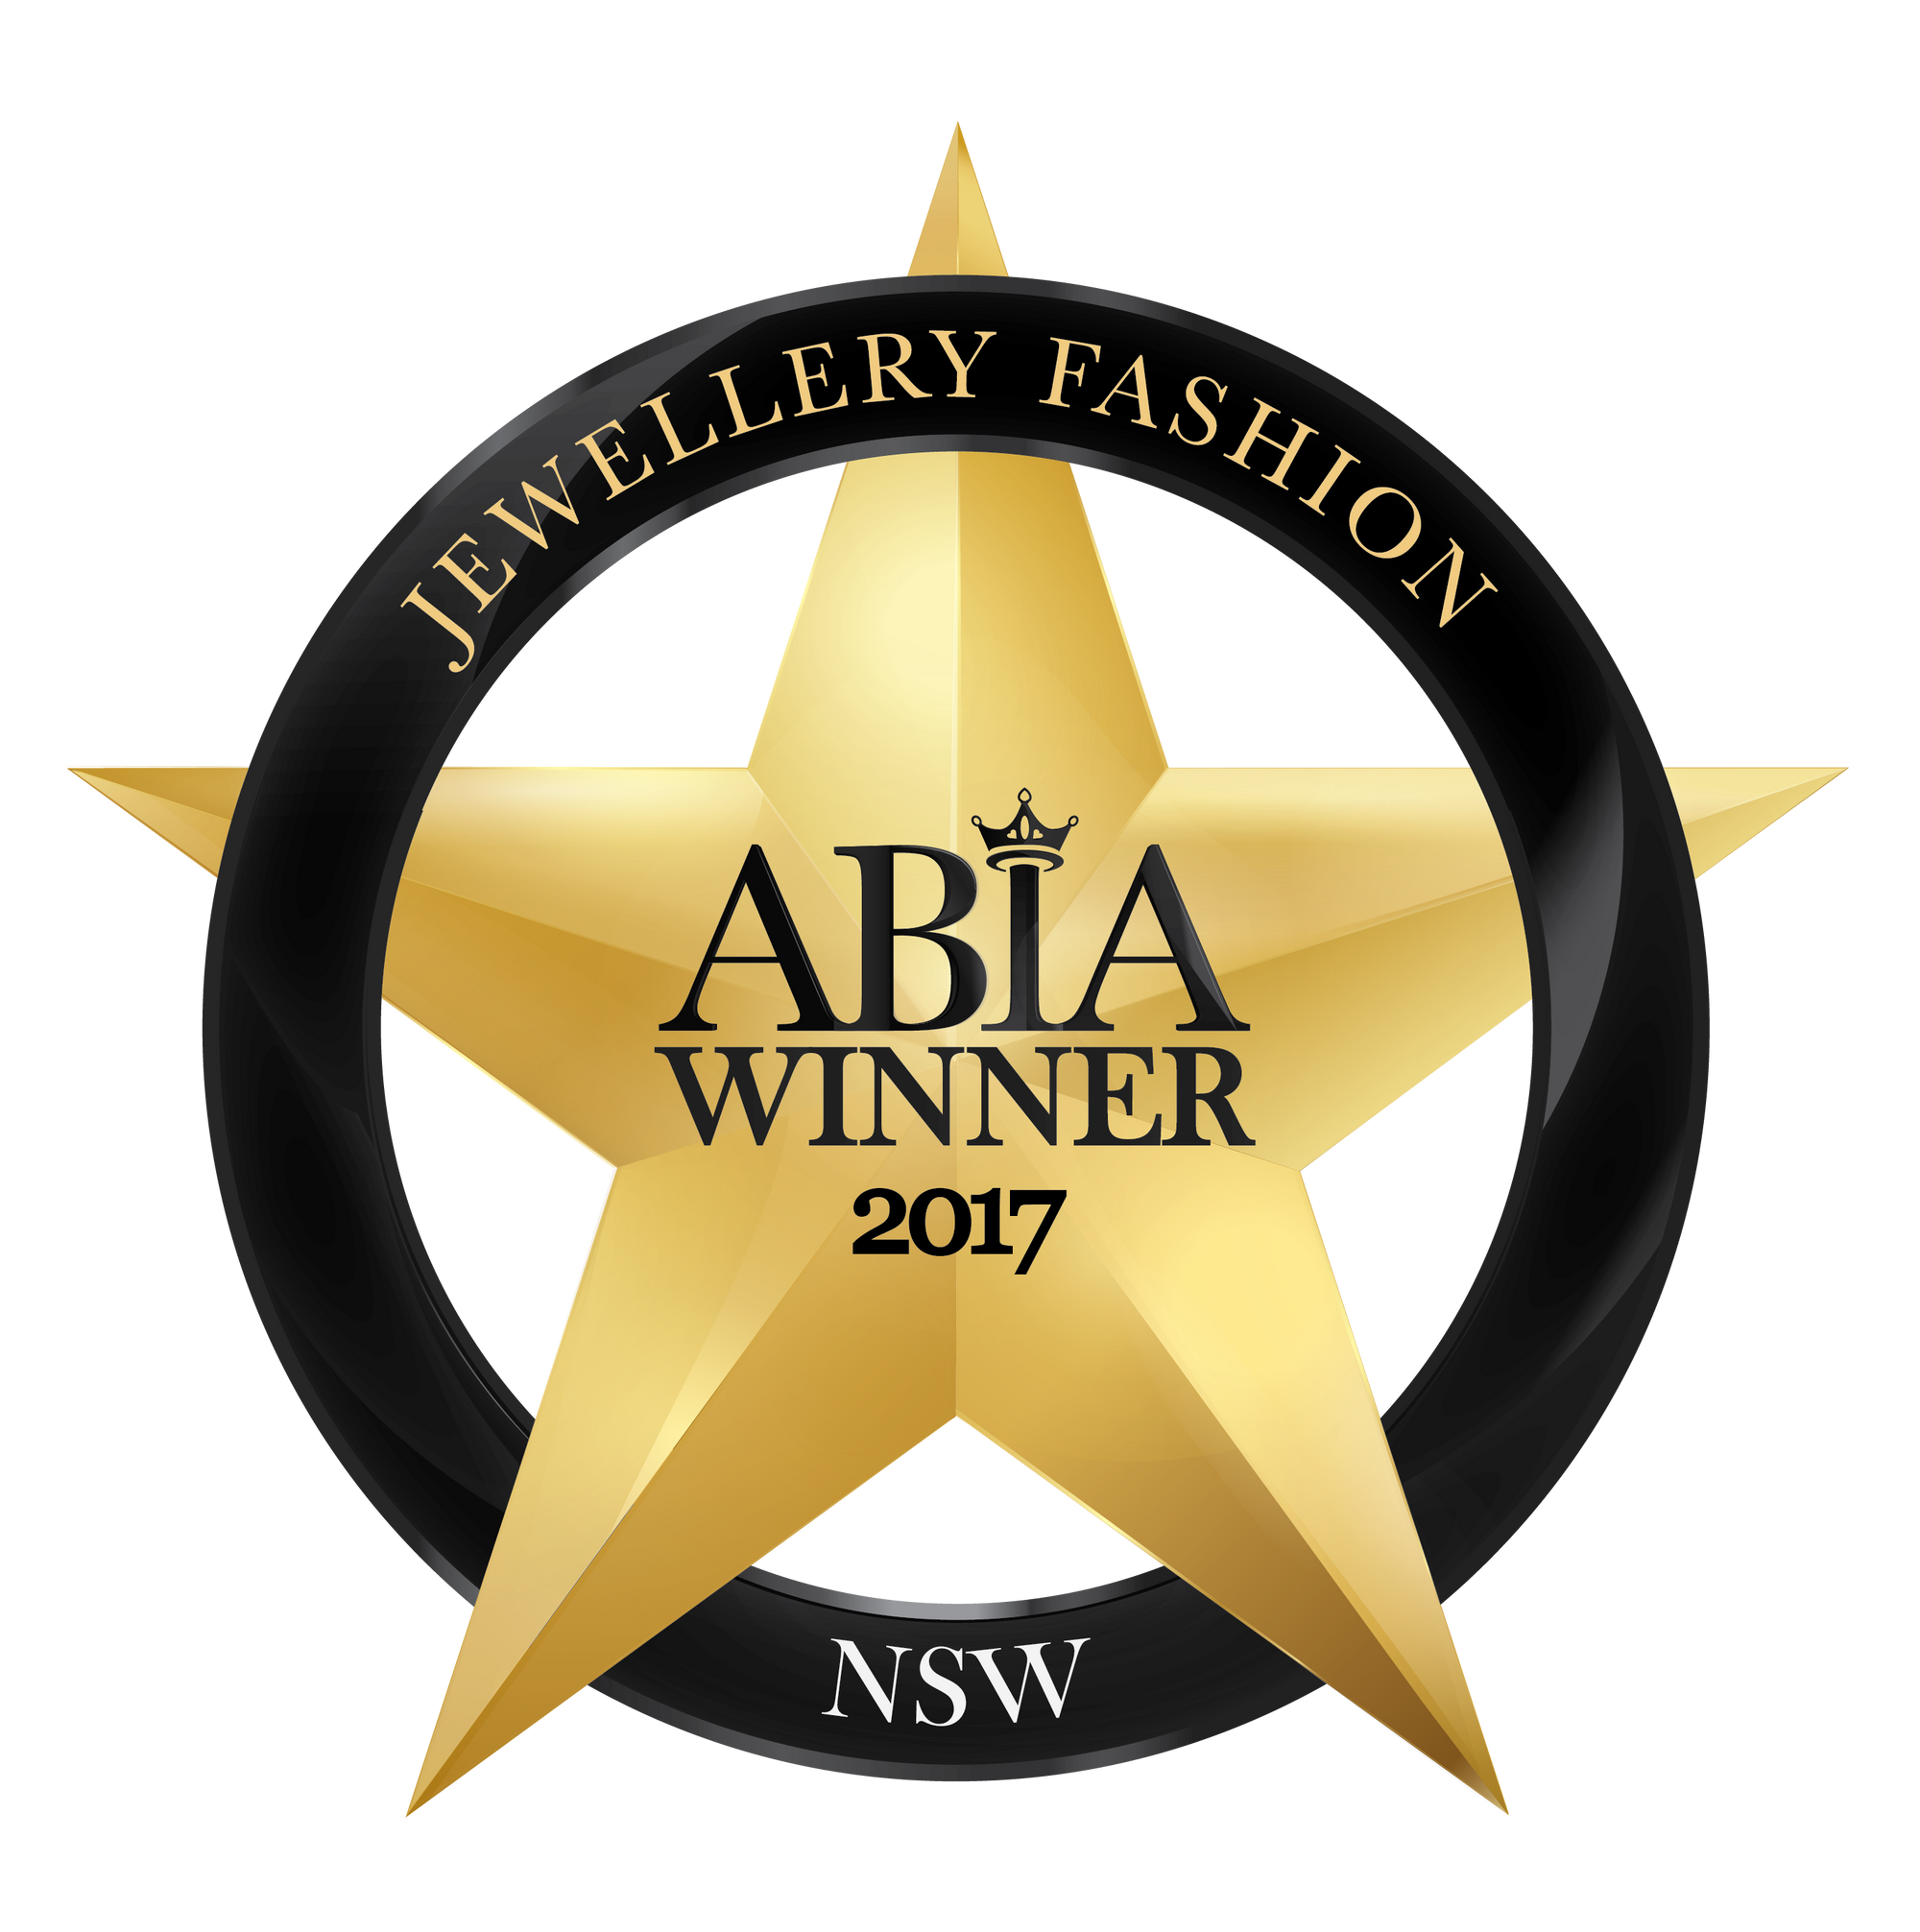 ABIA Winner 2017 Jewellery Fashion